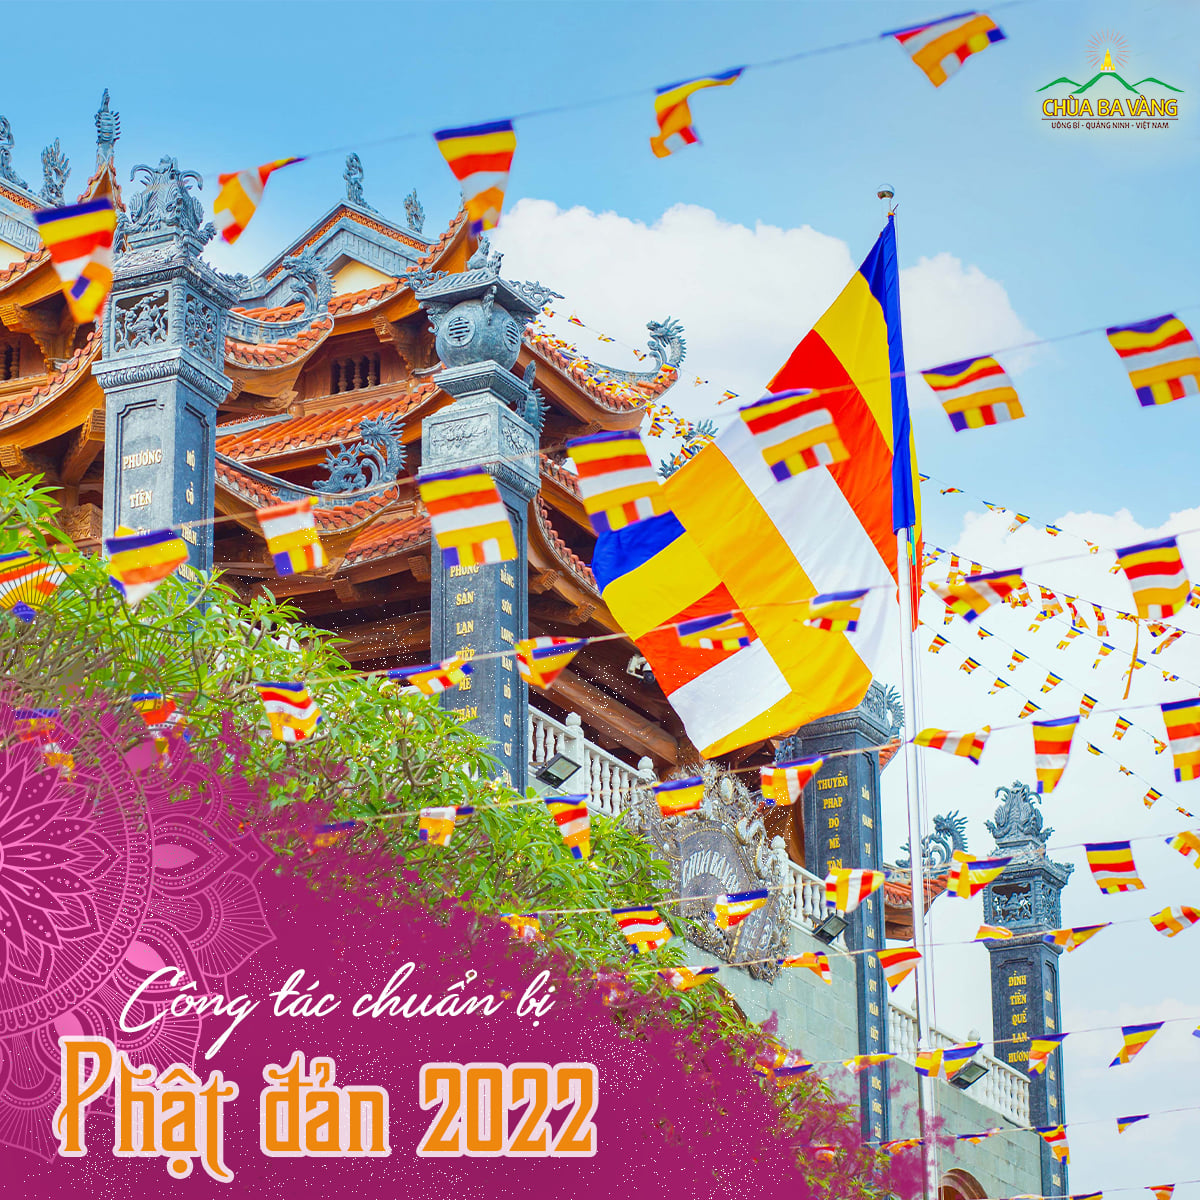 Những lá cờ Phật giáo tung bay khắp khuôn viên chùa Ba Vàng